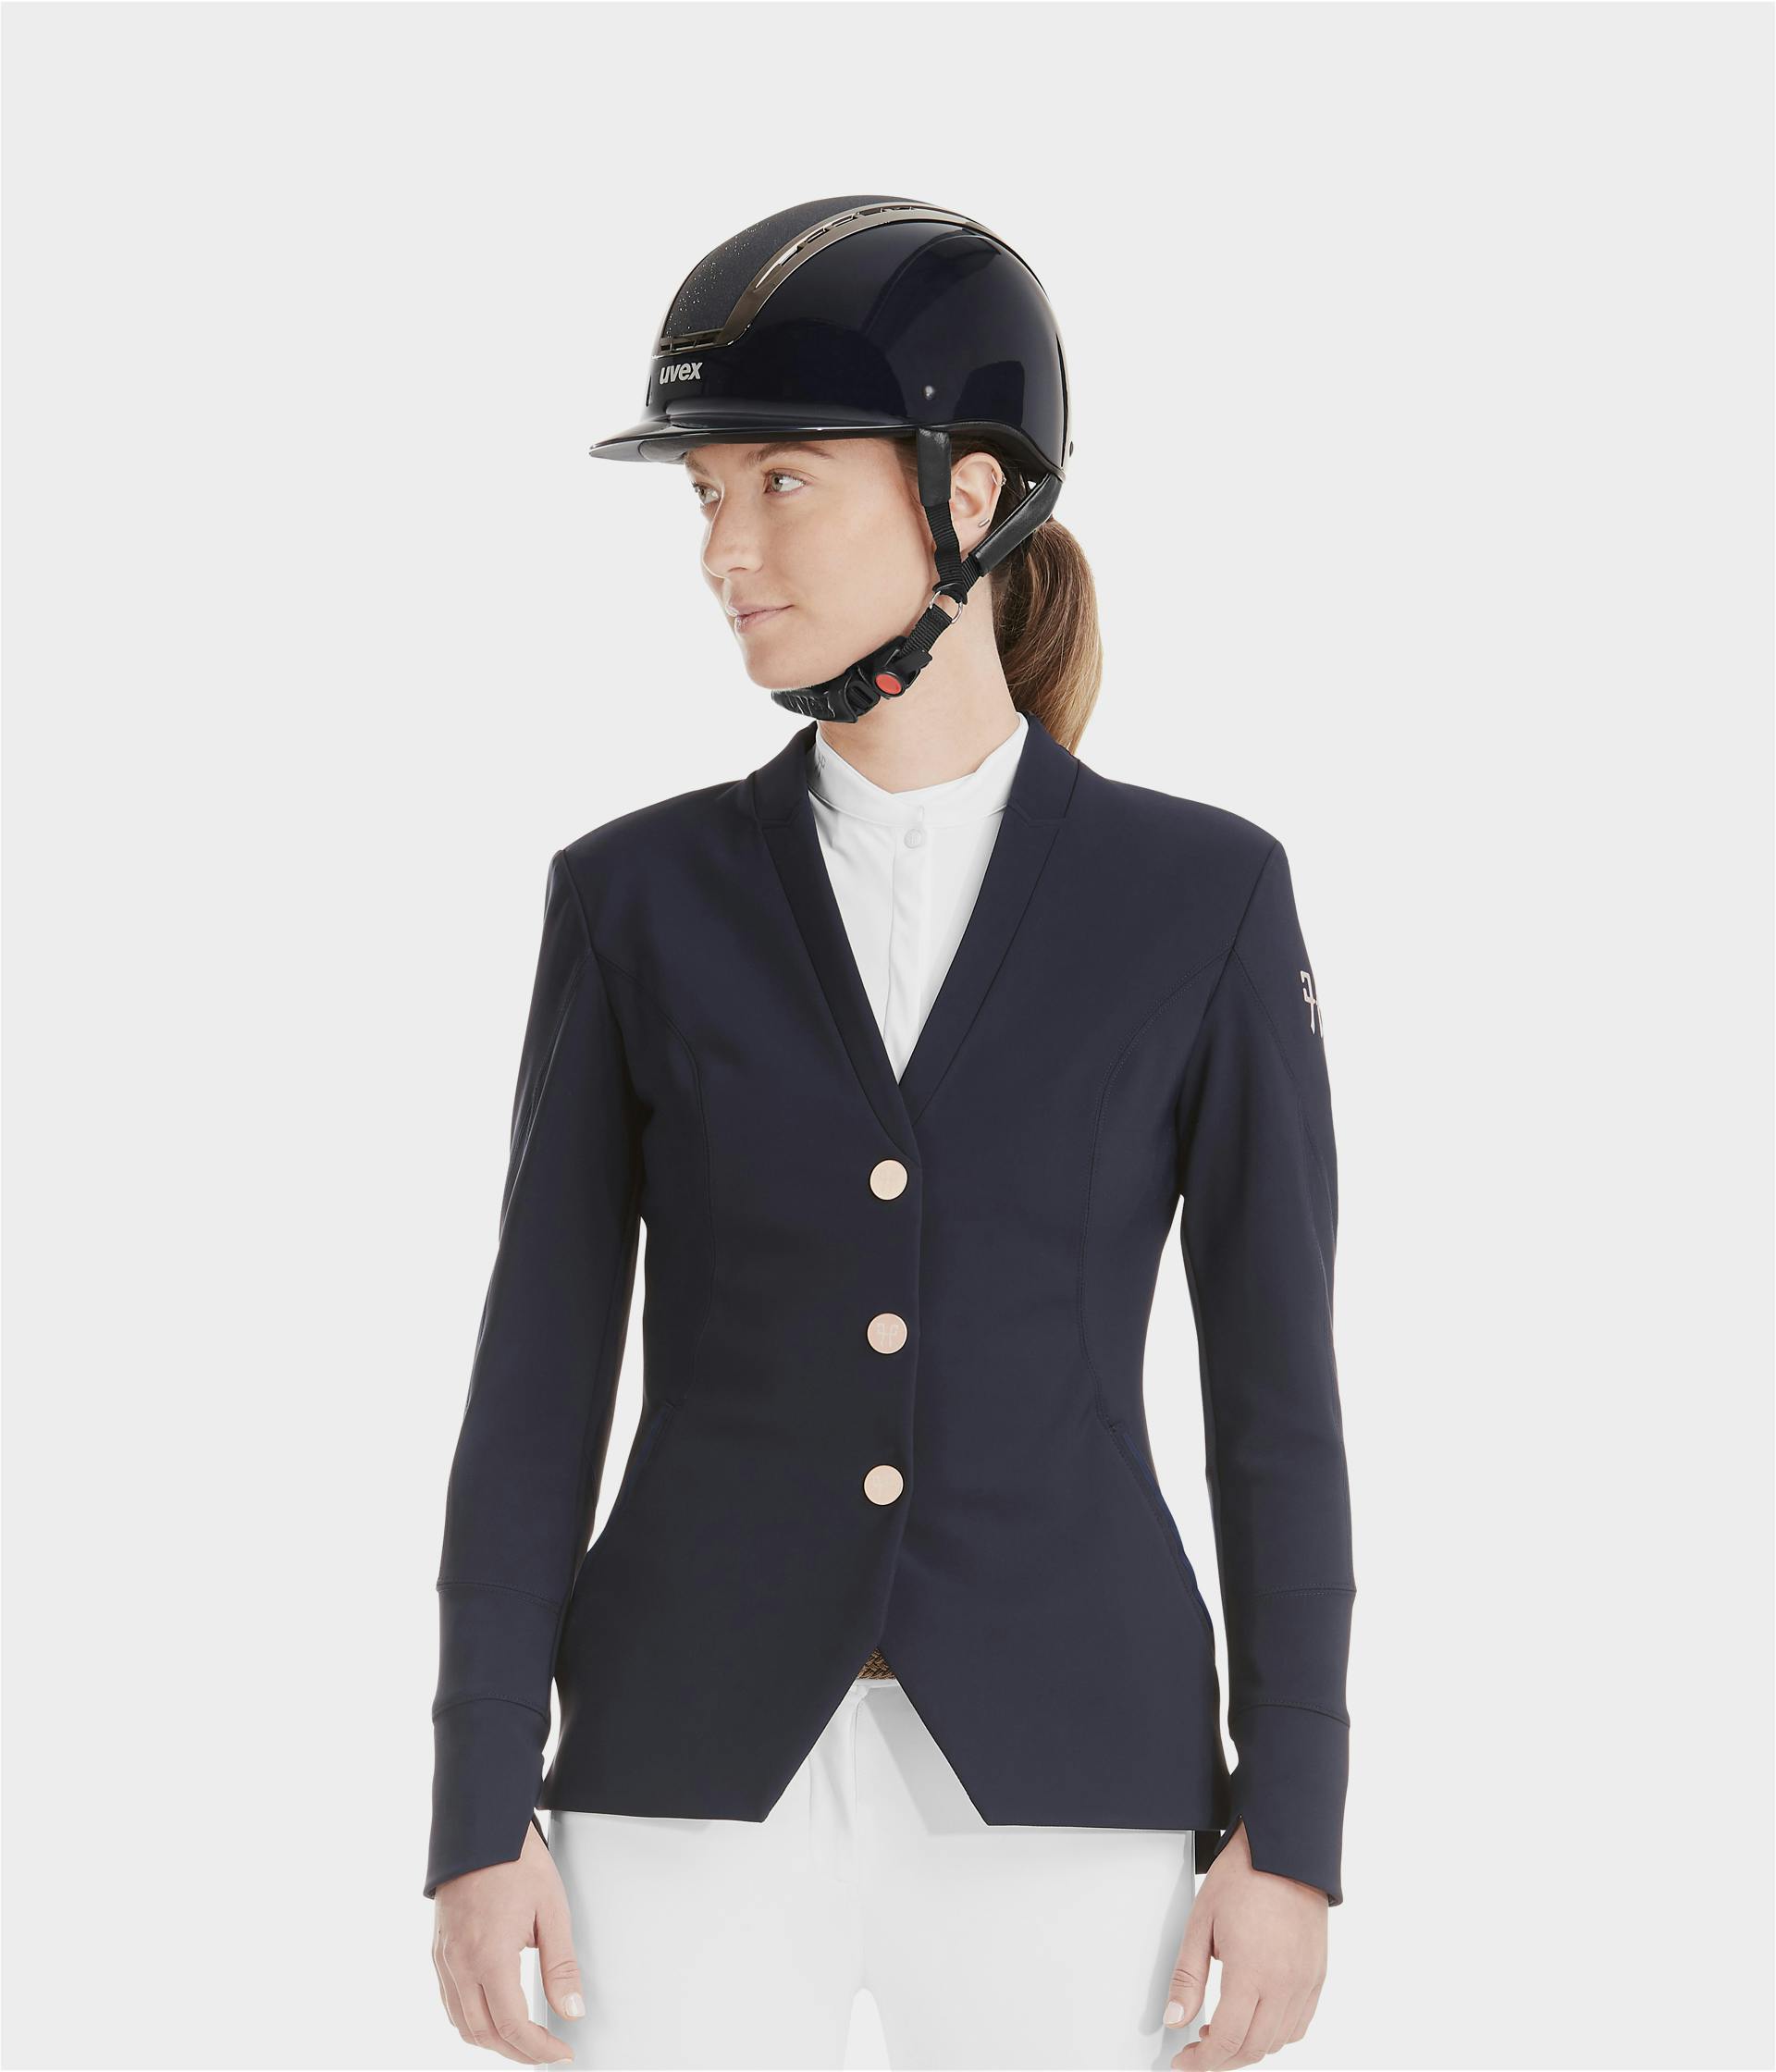 Horse riding outfit women: show Jacket show shirt & breeches Horse Pilot